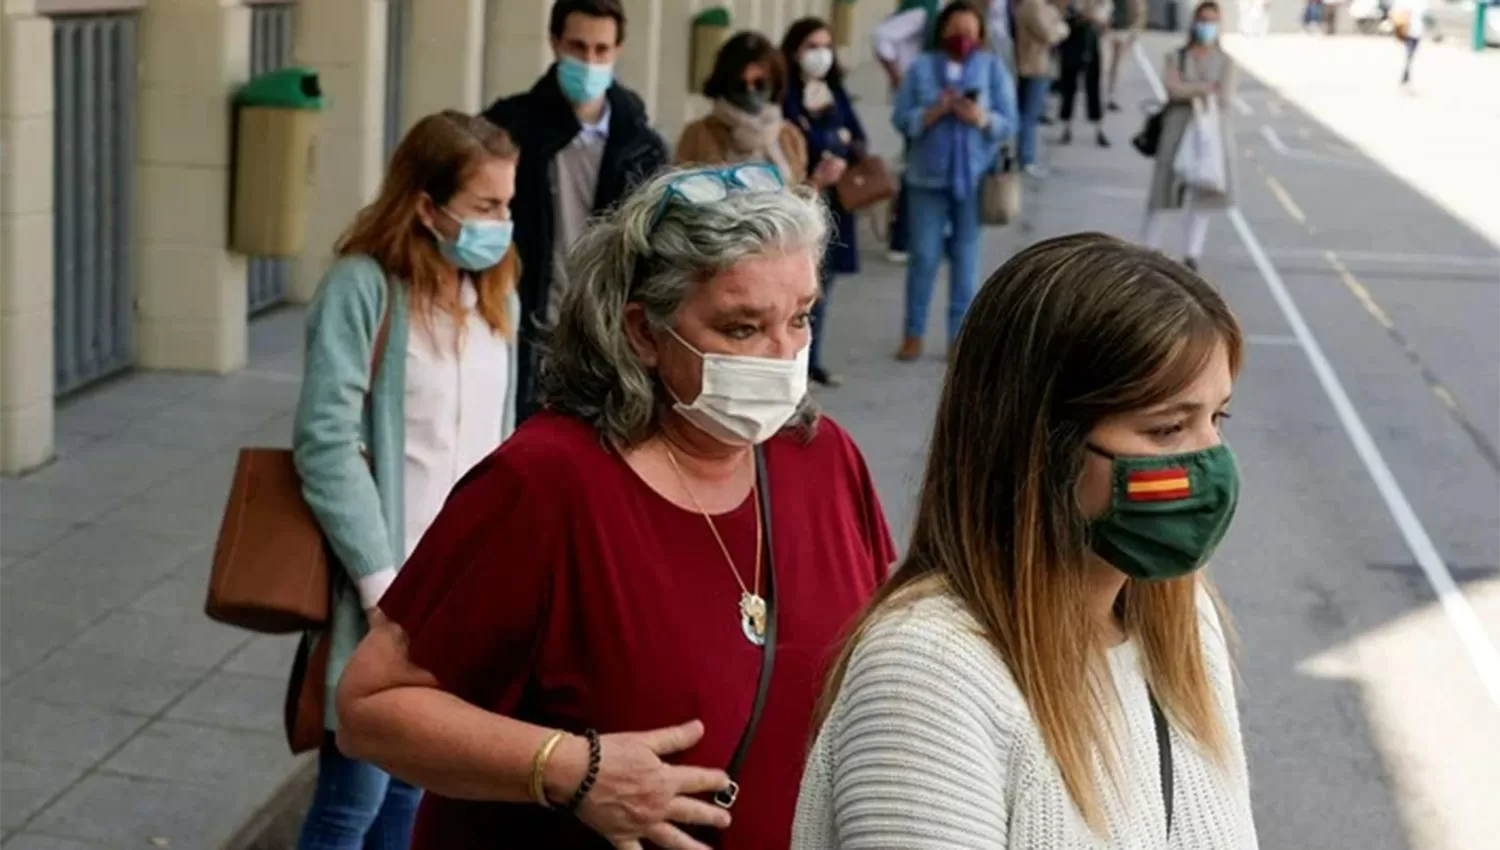 SALVEDAD. Los tapabocas seguirán siendo exigidos en los hospitales, geriátricos y transportes públicos de España.